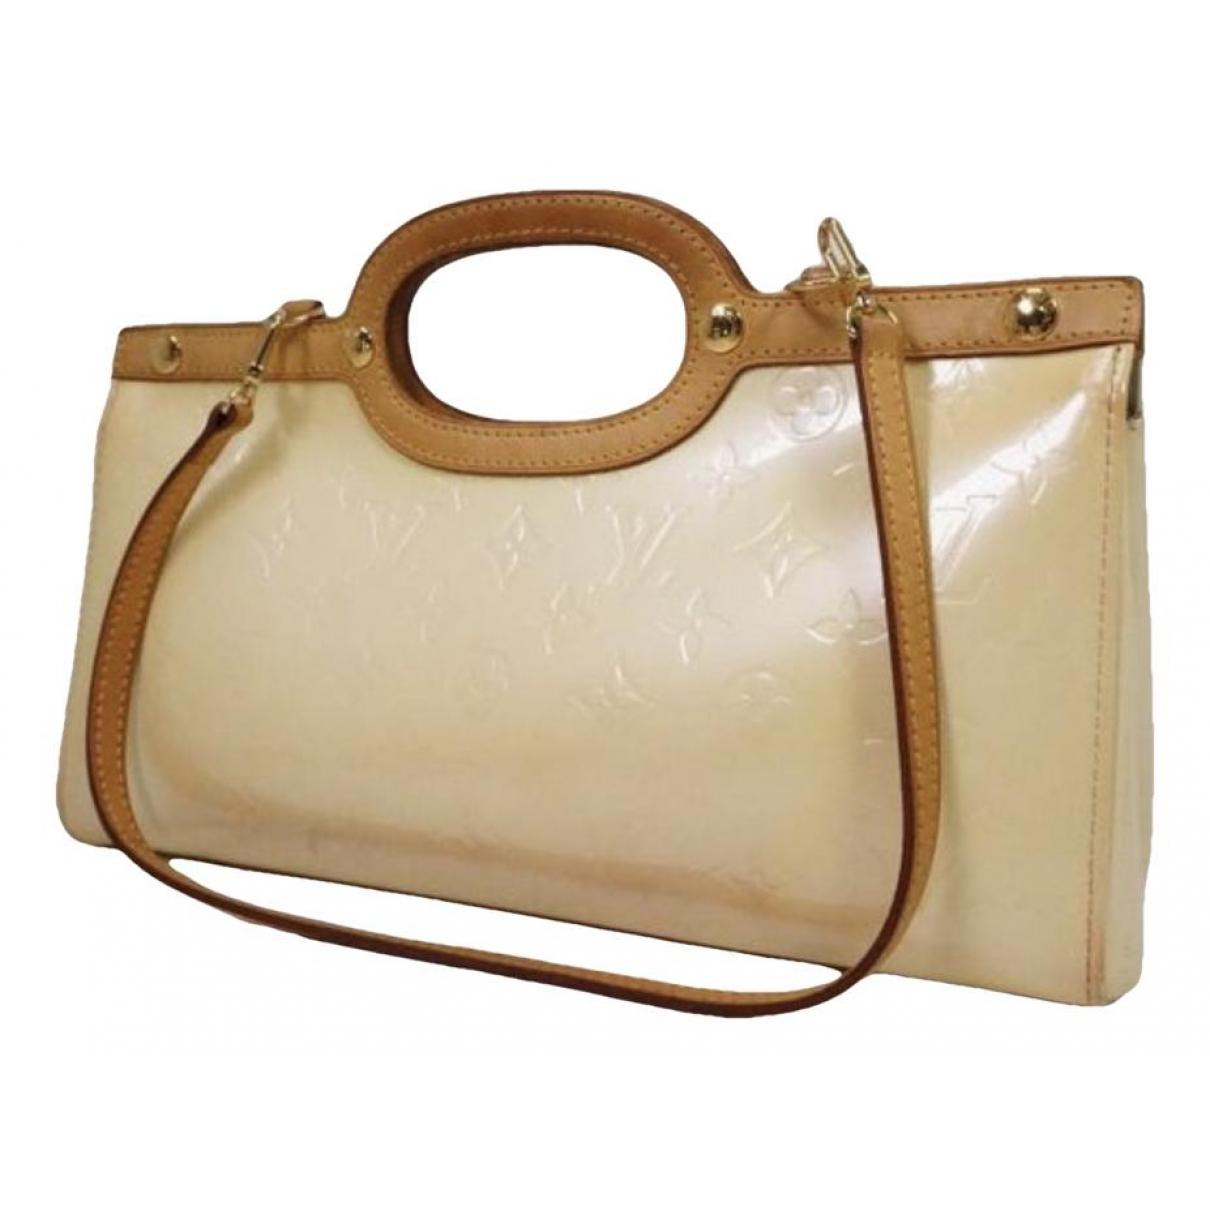 Roxbury leather handbag Louis Vuitton White in Leather - 37455090